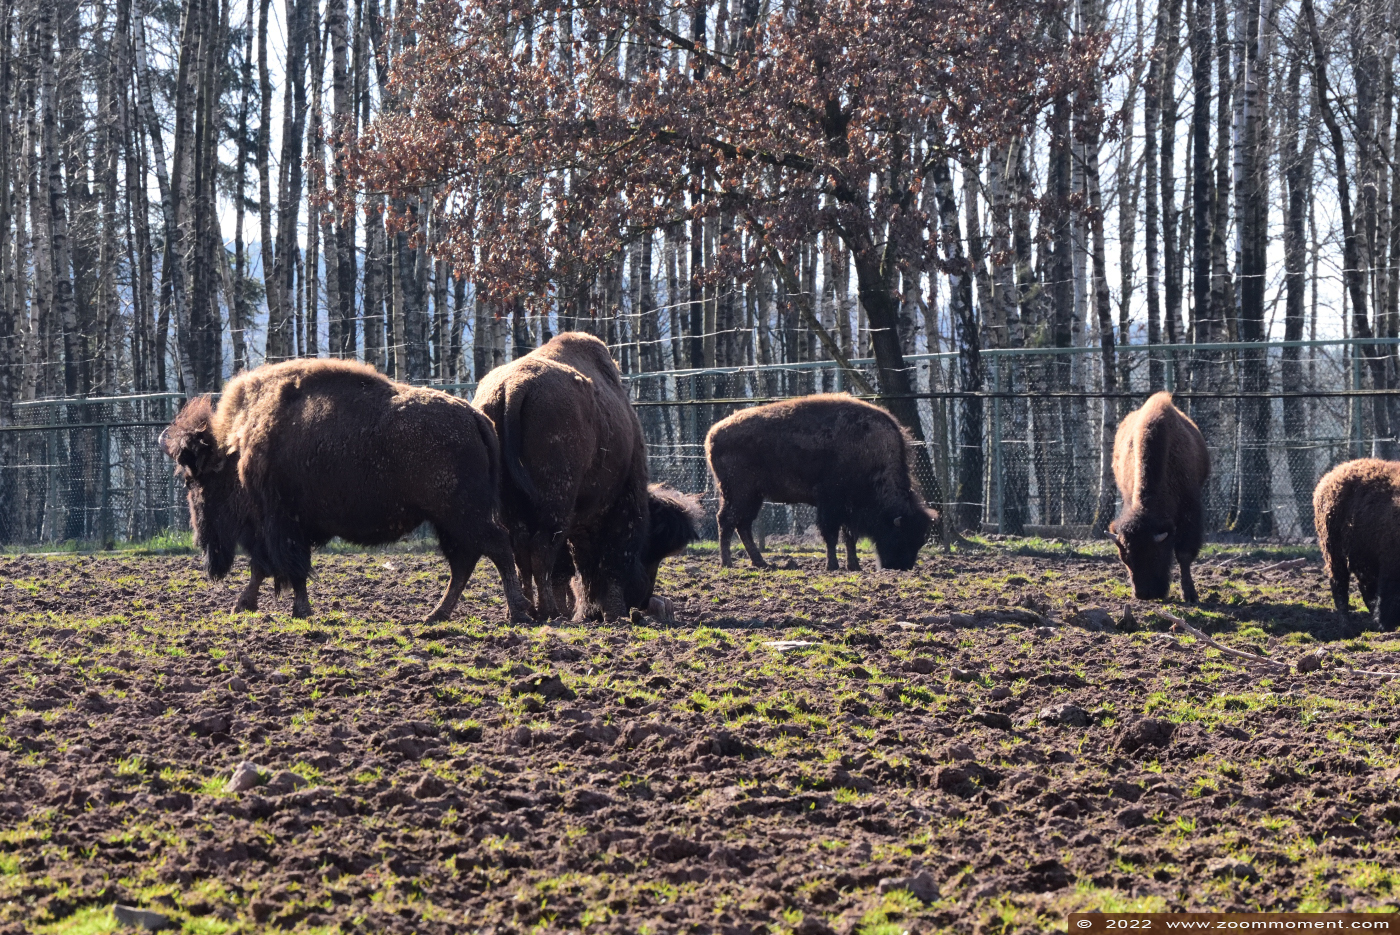 Amerikaanse bizon ( Bison bison bison )  Plains bison or American bison Amerikanische Bison
Palavras chave: Monde Sauvage Belgium Amerikaanse bizon Bison bison bison Plains bison American bison Amerikanische Bison